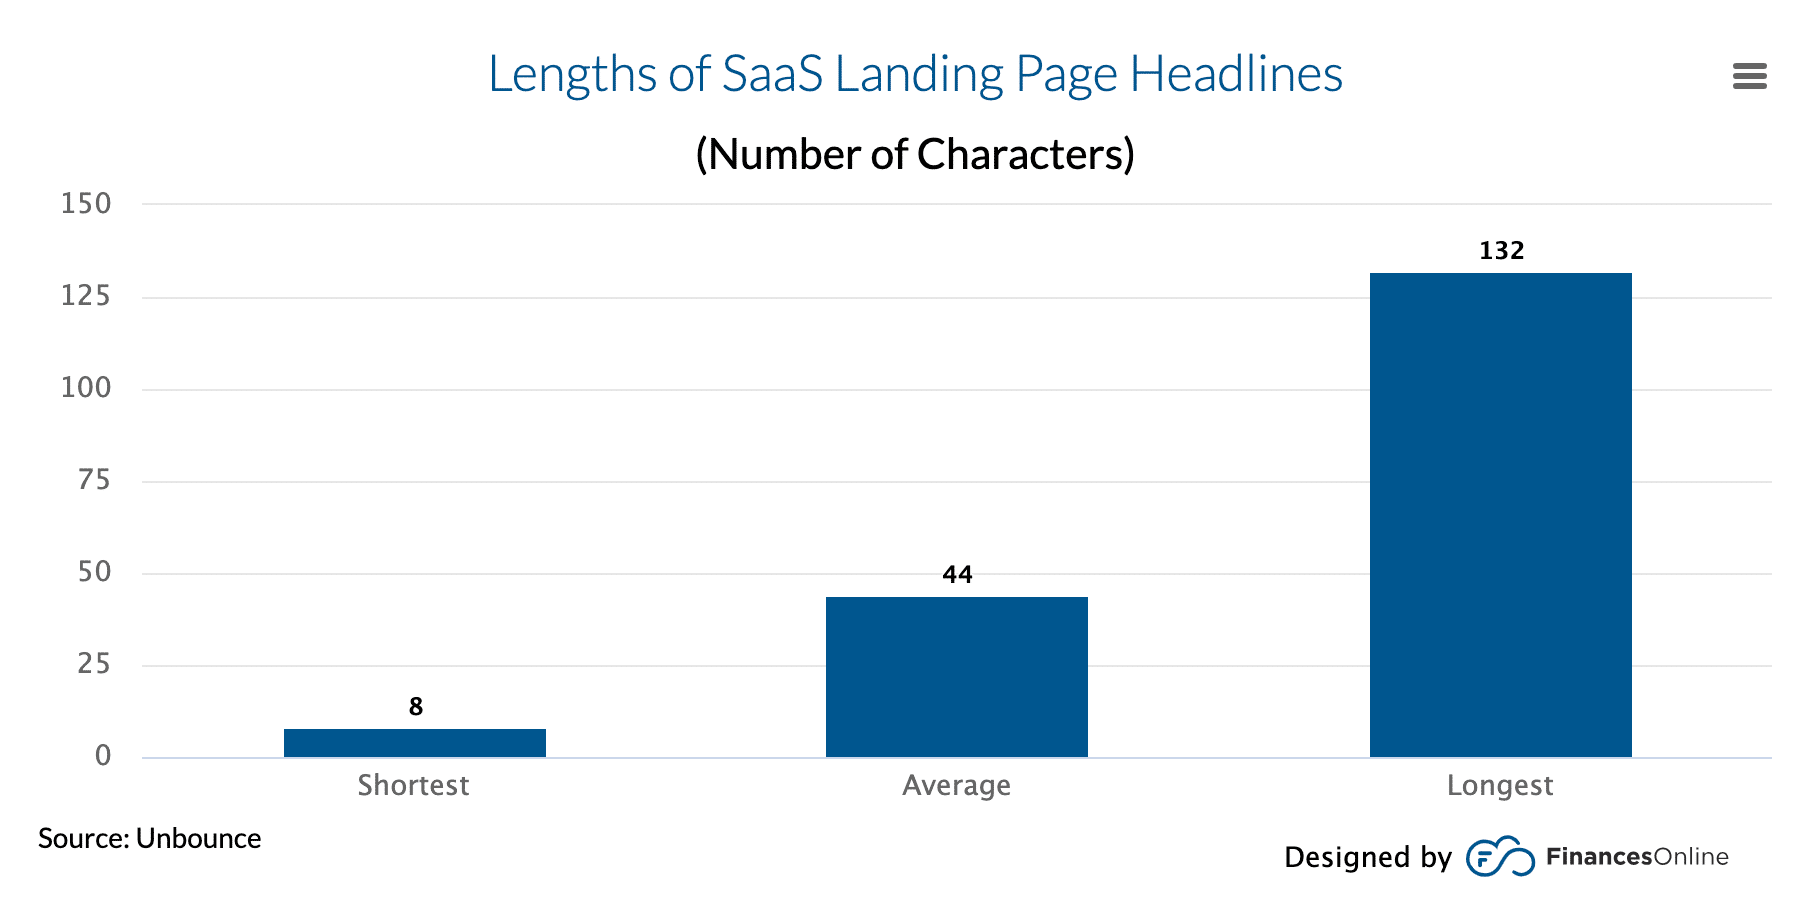 SaaS landing page headline statistics